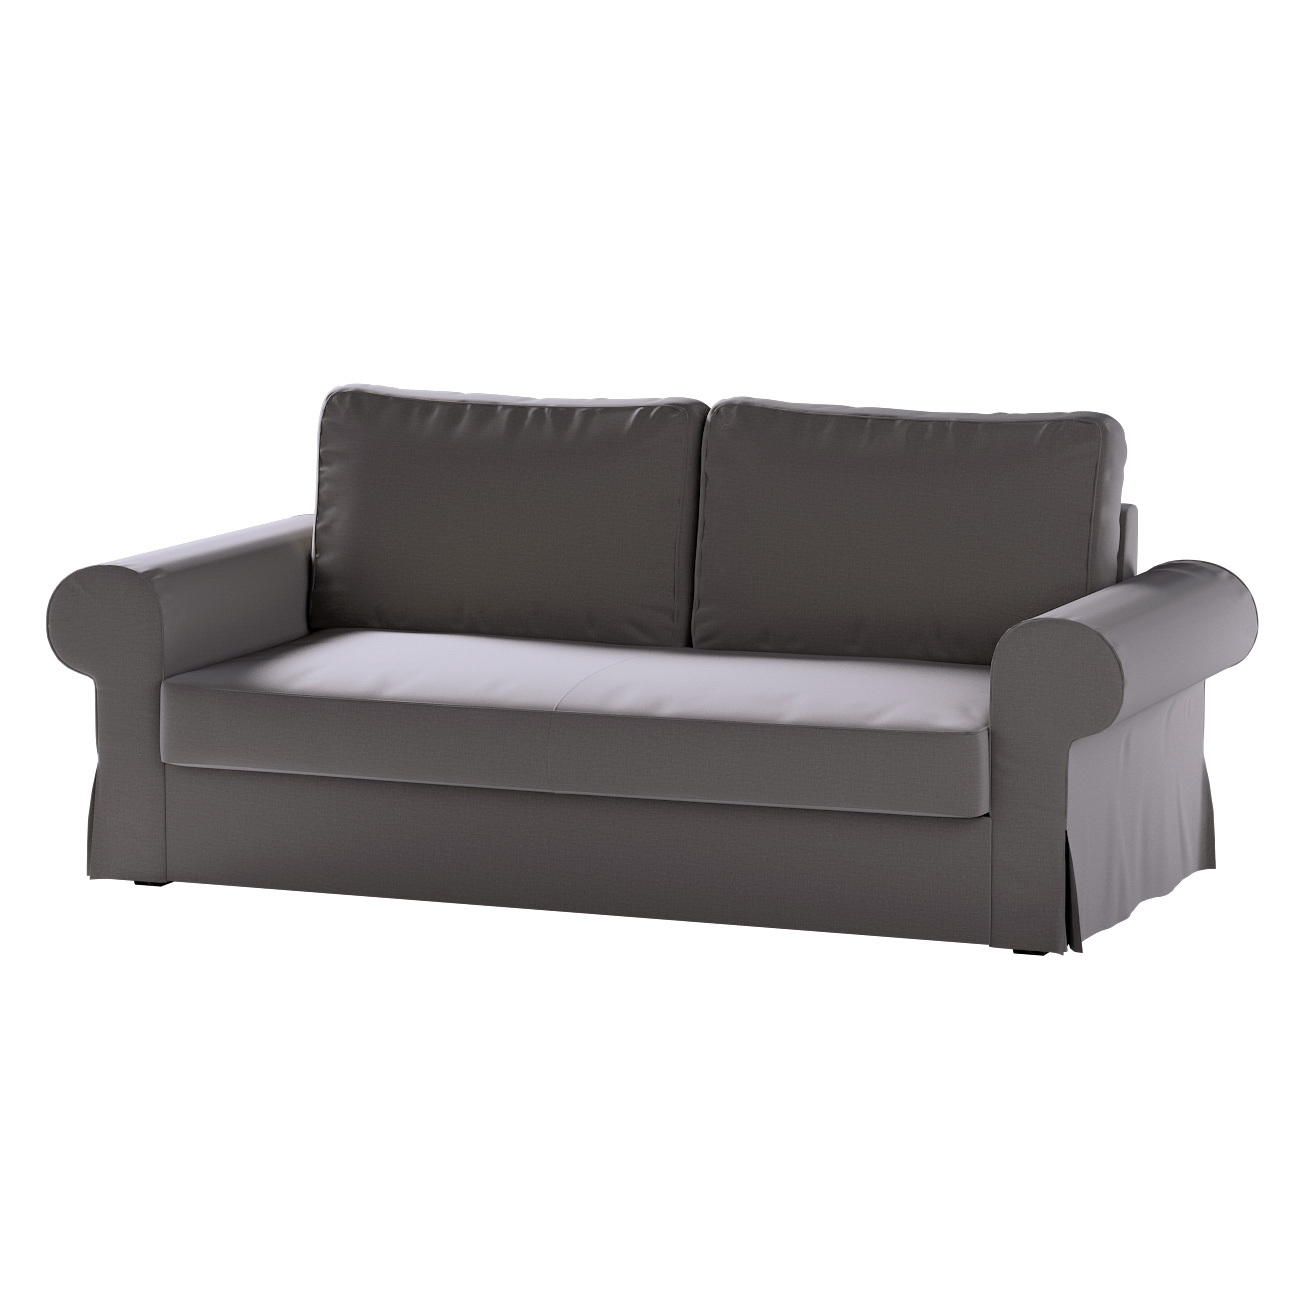 Bezug für Backabro 3-Sitzer Sofa ausklappbar, braun, Bezug für Backabro 3-S günstig online kaufen